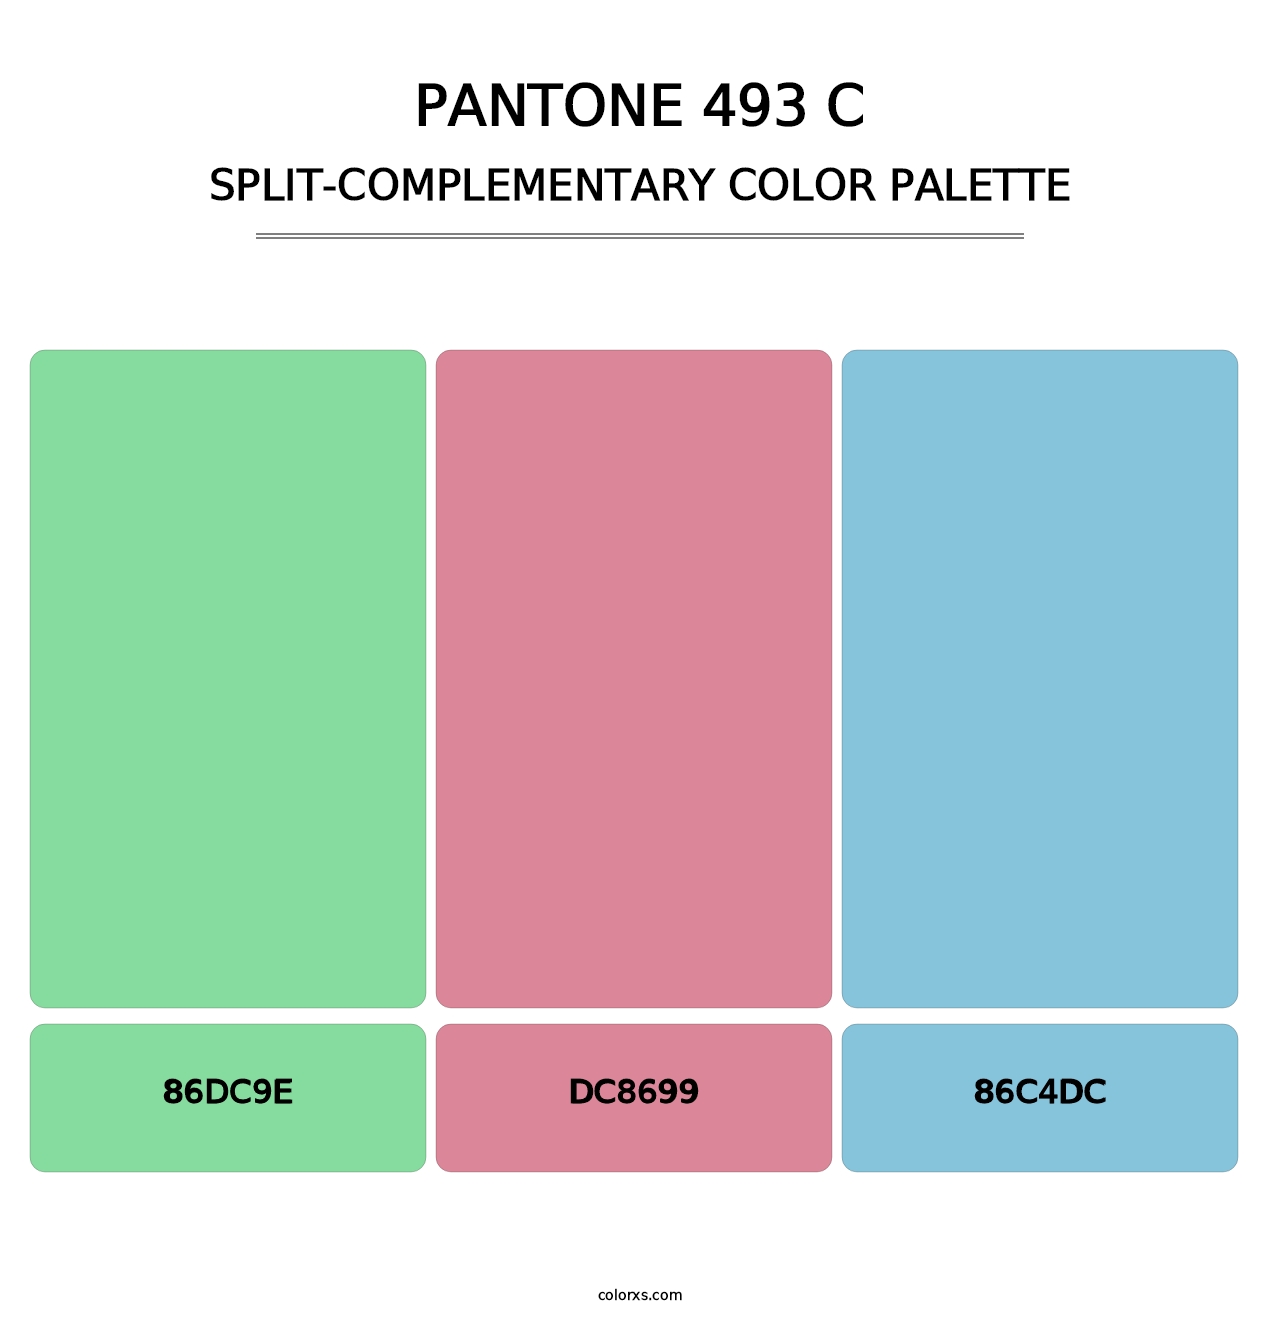 PANTONE 493 C - Split-Complementary Color Palette